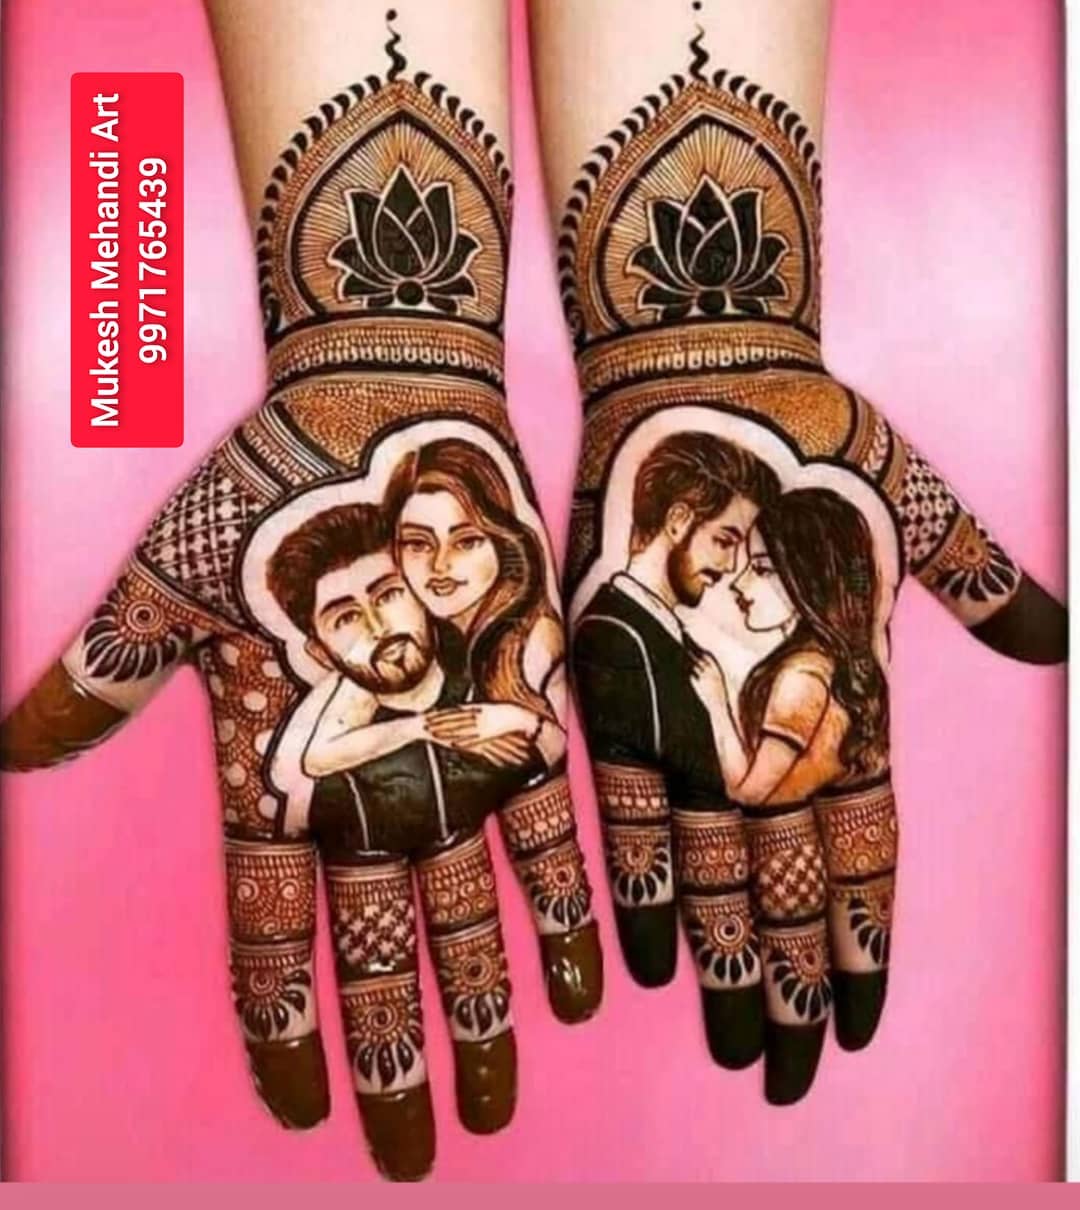 Vinod Mehandi Art - Mehndi - Rohini - Weddingwire.in